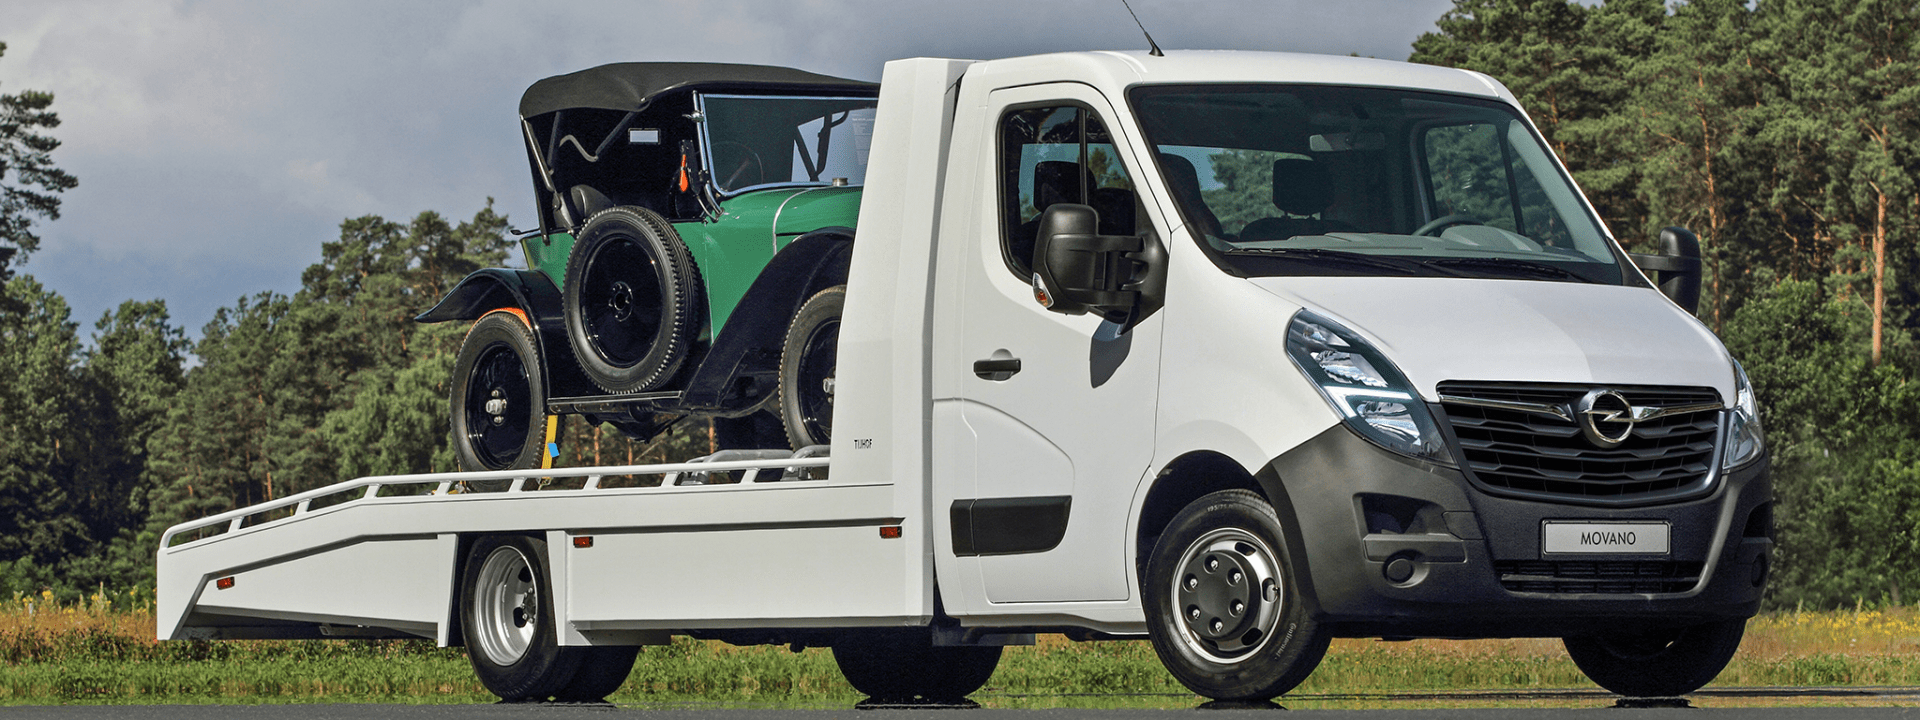 Foto: Transportador de vehículos Opel Movana Tijhof